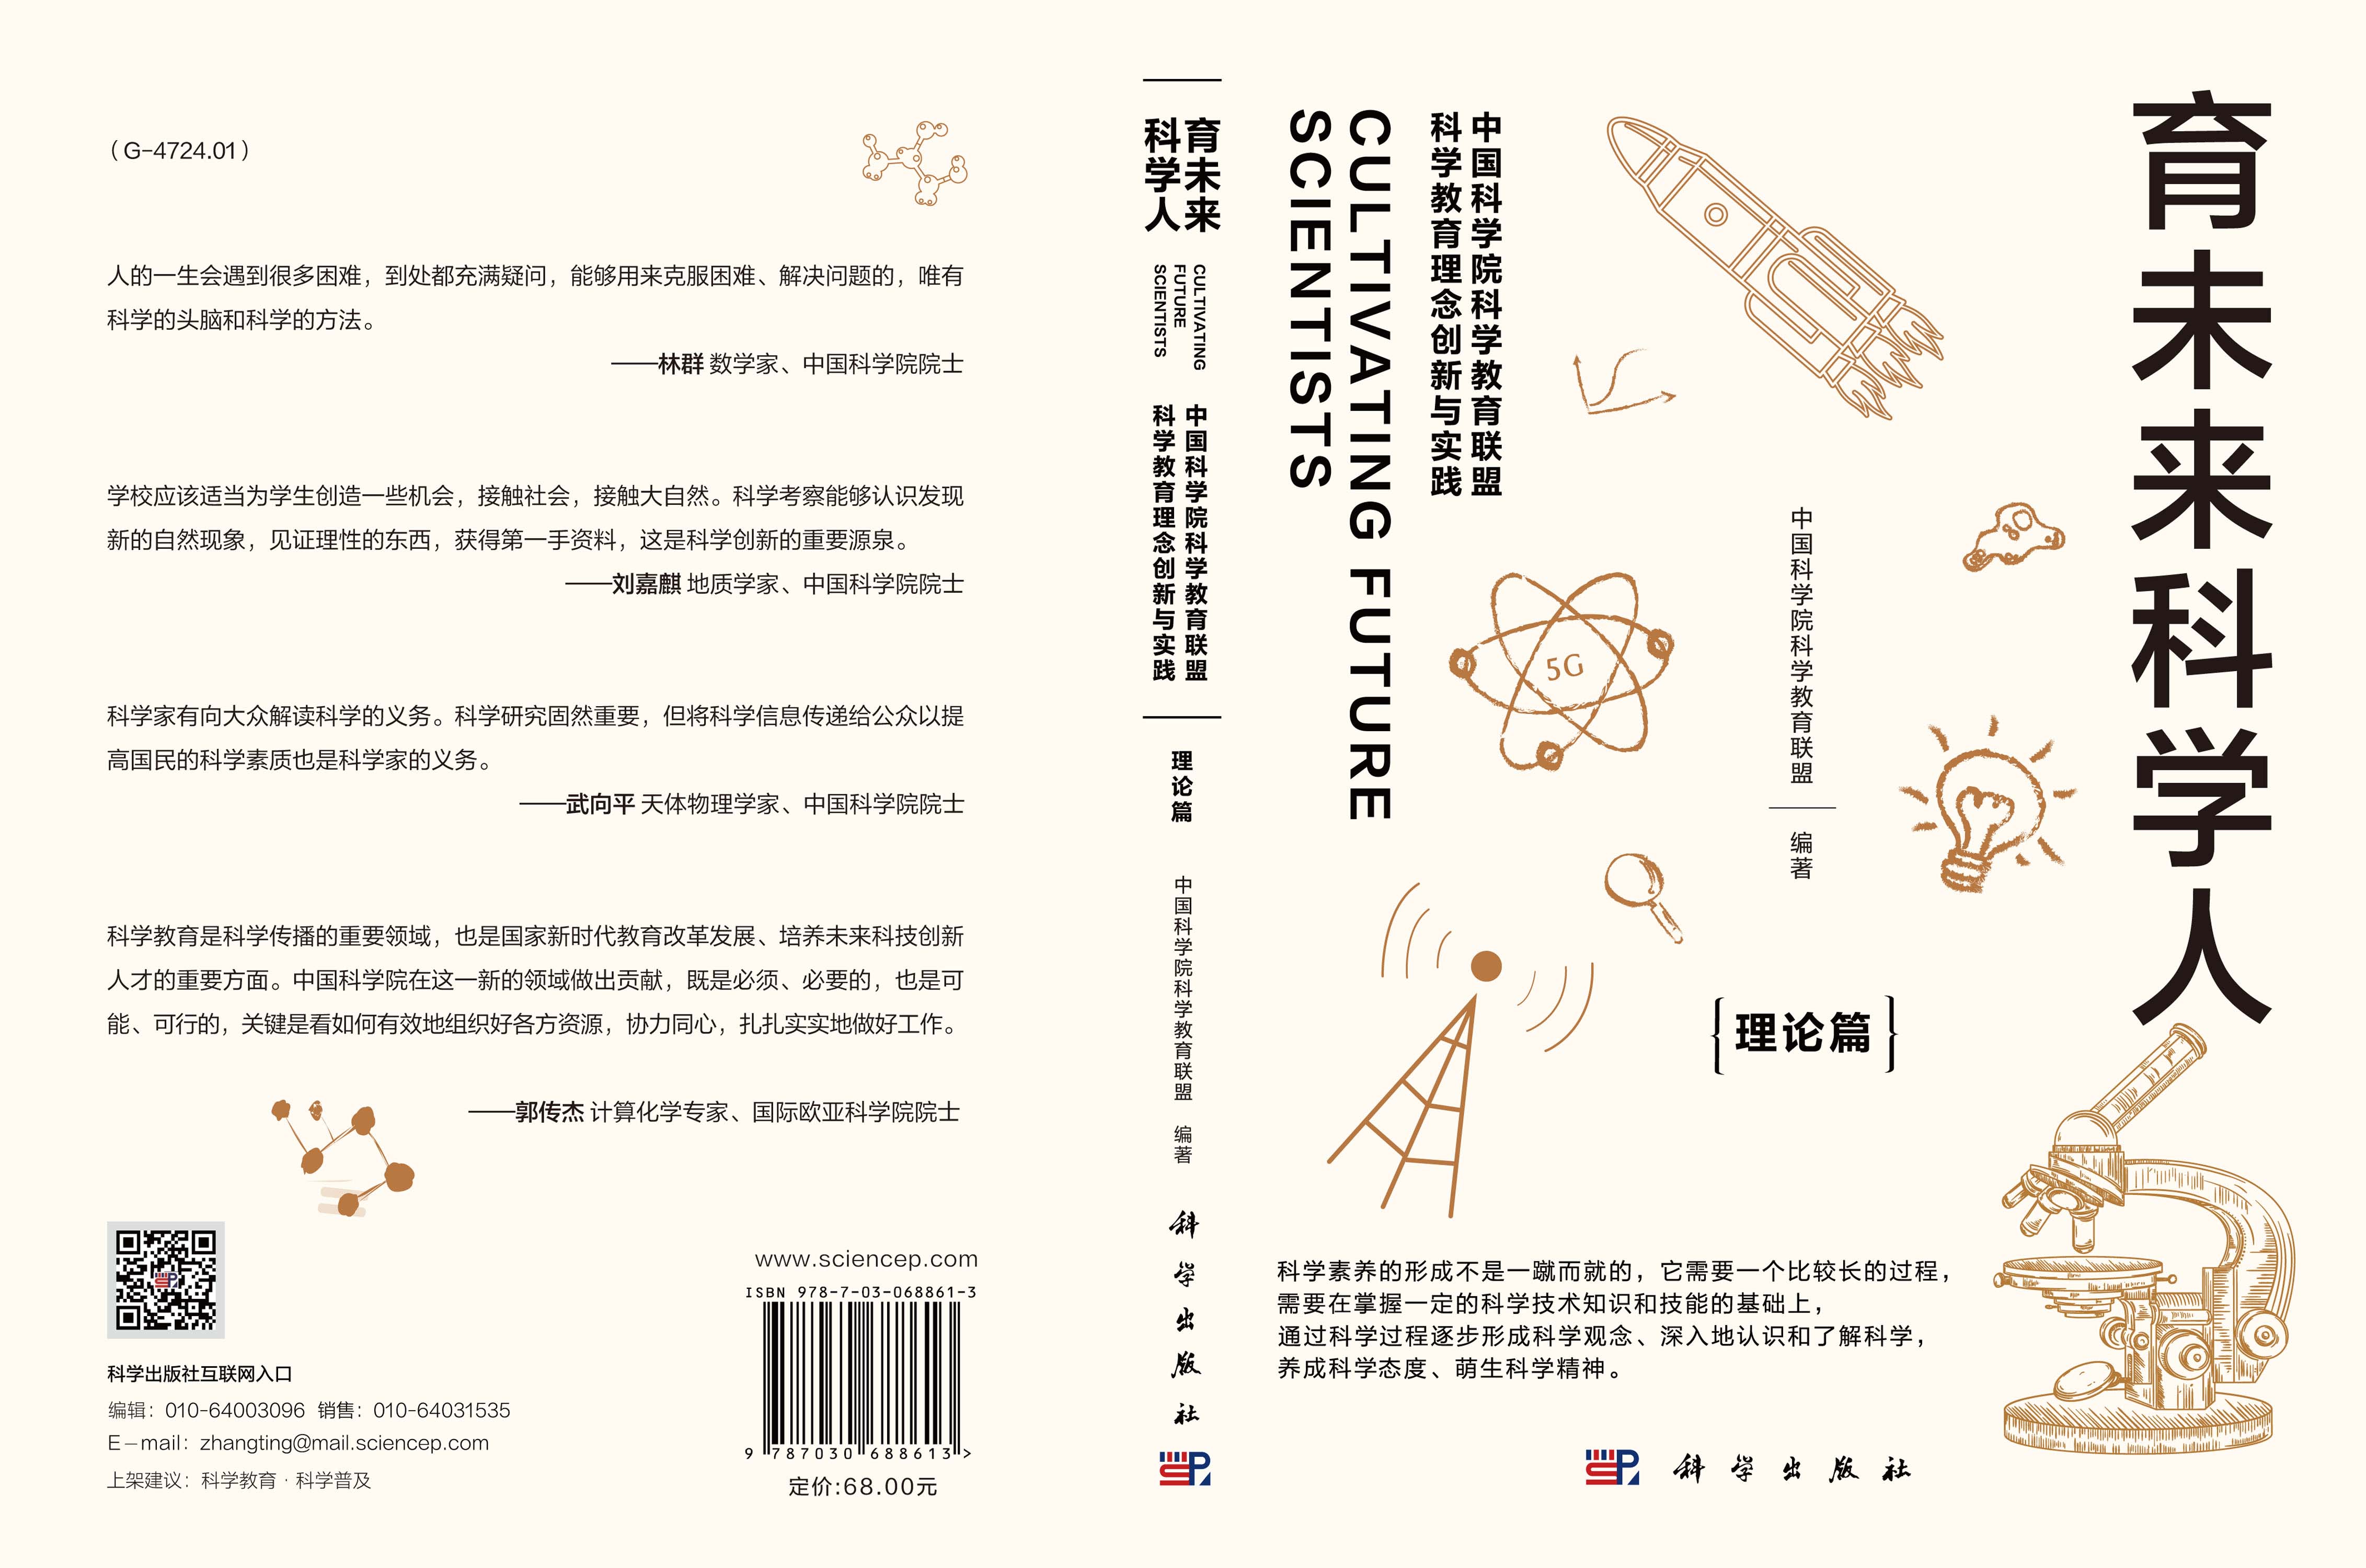 育未来科学人：中国科学院科学教育联盟科学教育理念创新与实践. 理论篇